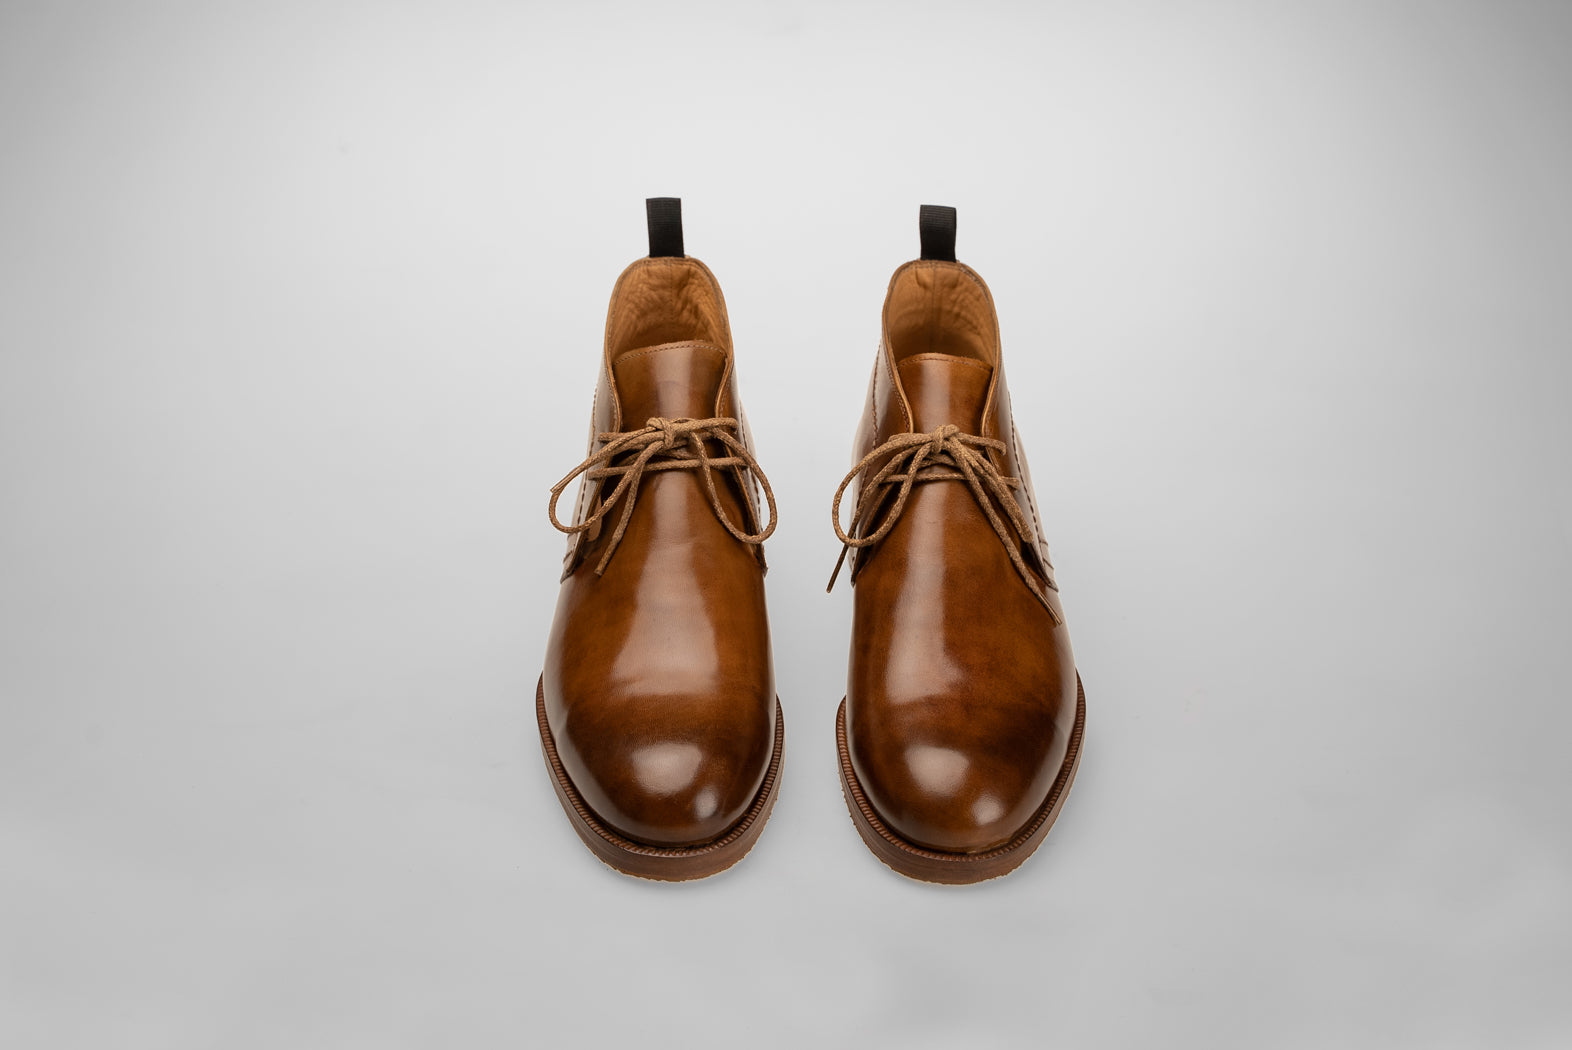 Bosphorus Leather Chukka Boots - Gulf 201